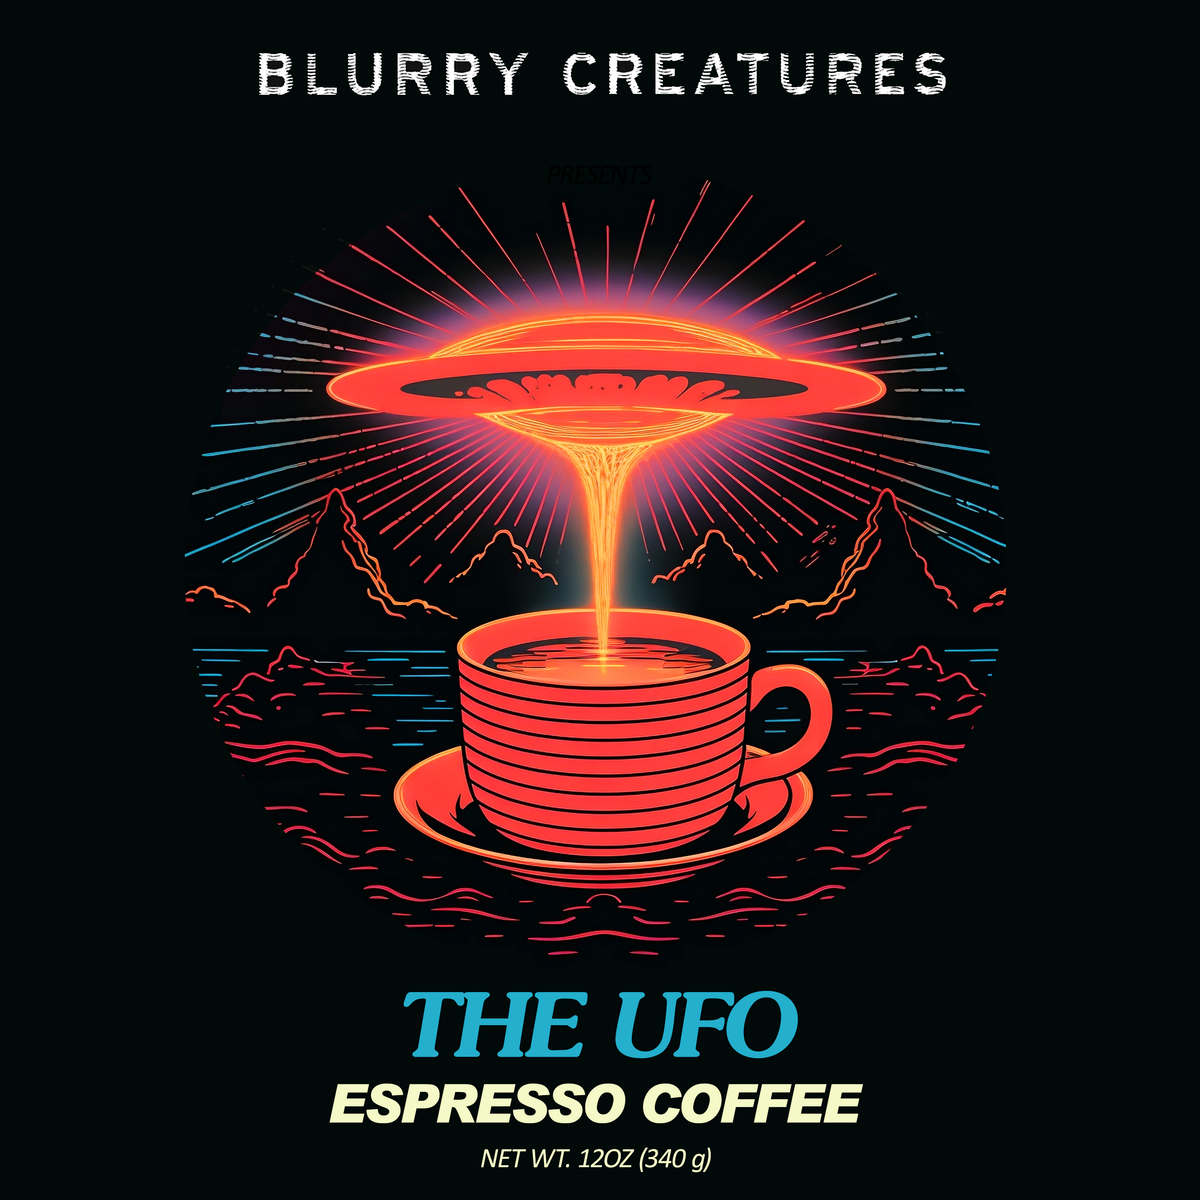 THE UFO - ESPRESSO